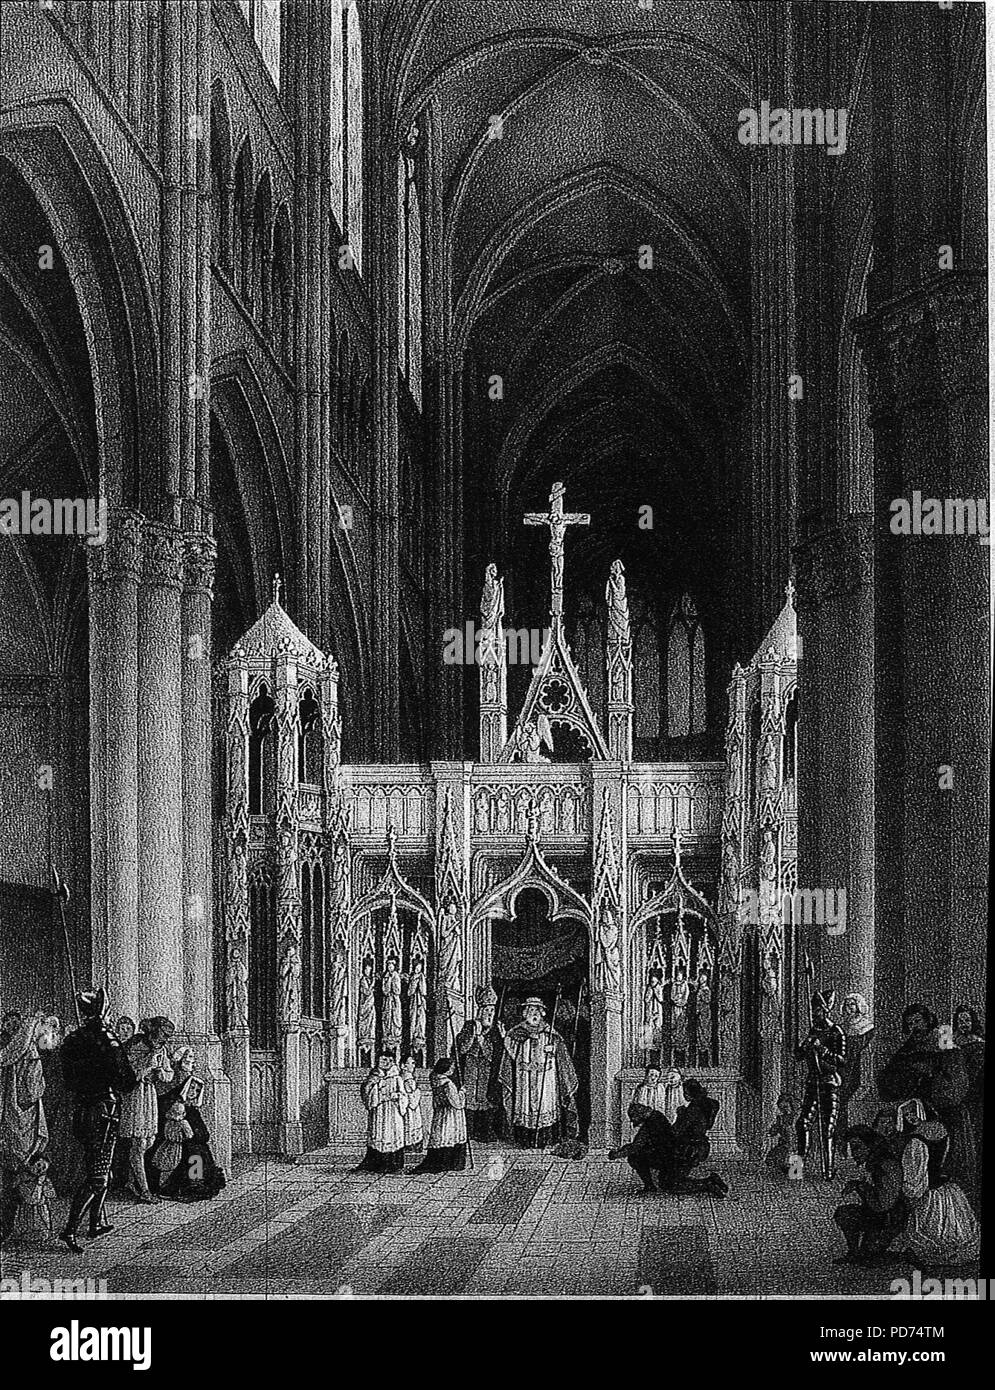 Ancien jubé cathédrale reims bmr 14 339 rotocalco maquart jj. Foto Stock